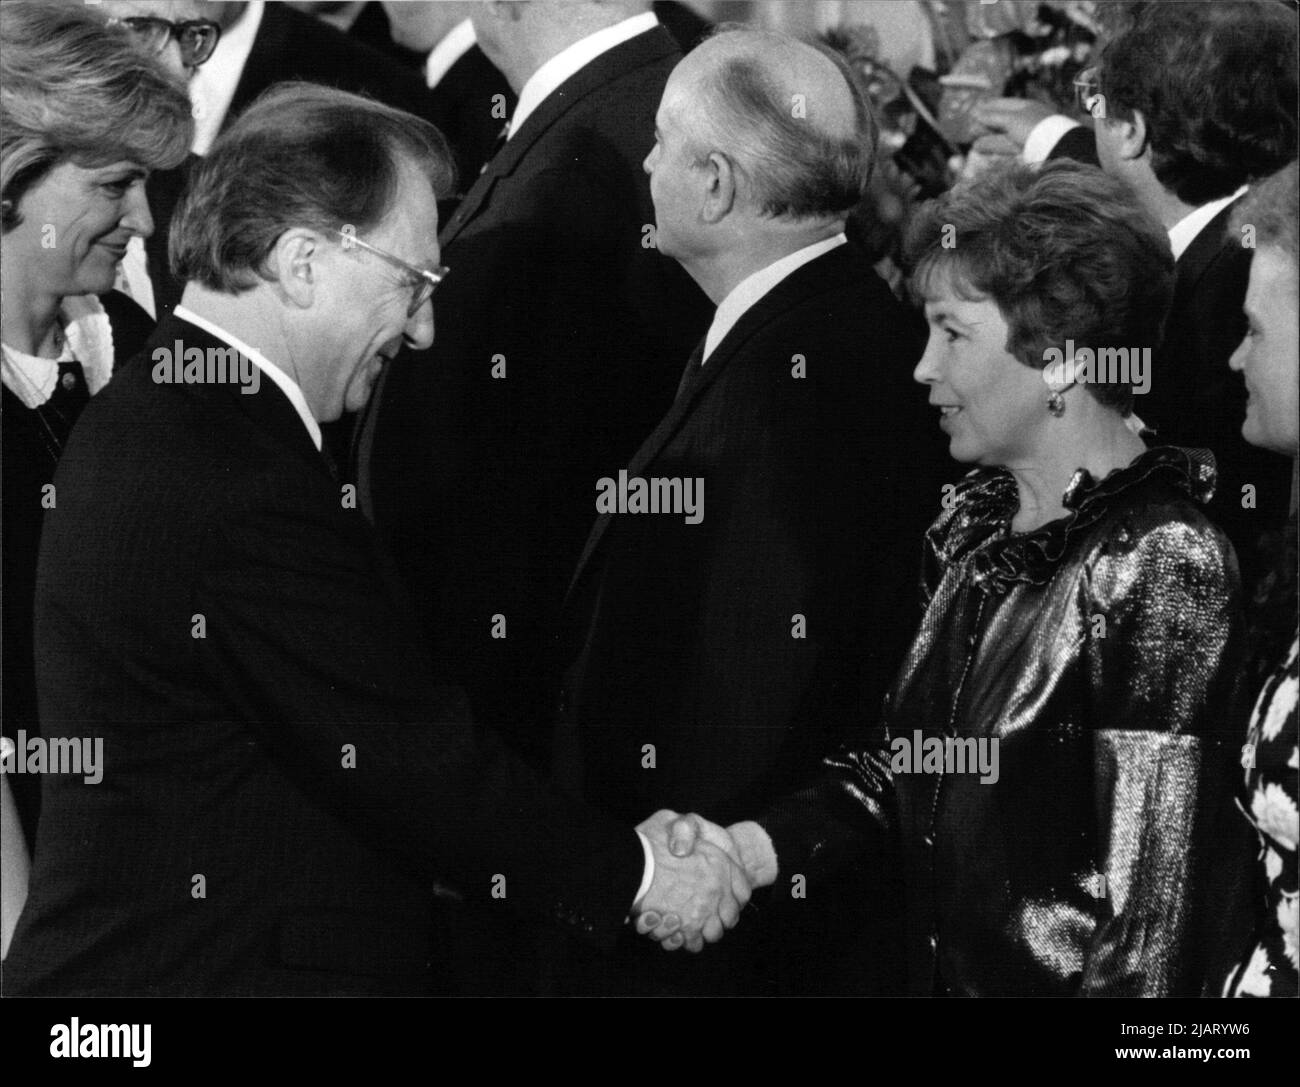 Das Foto zeigt den Ministerpräsidenten von Baden-Württemberg Lothar Späth bei der Begrüßung von Raissa Gorbatschowa in der Godesberger Redoute. In der Bildmitte, der Generalsekretär des Zentralkomitees der Kommunistischen Partei der Sowjetunion, Michail Gorbatschow. Stock Photo